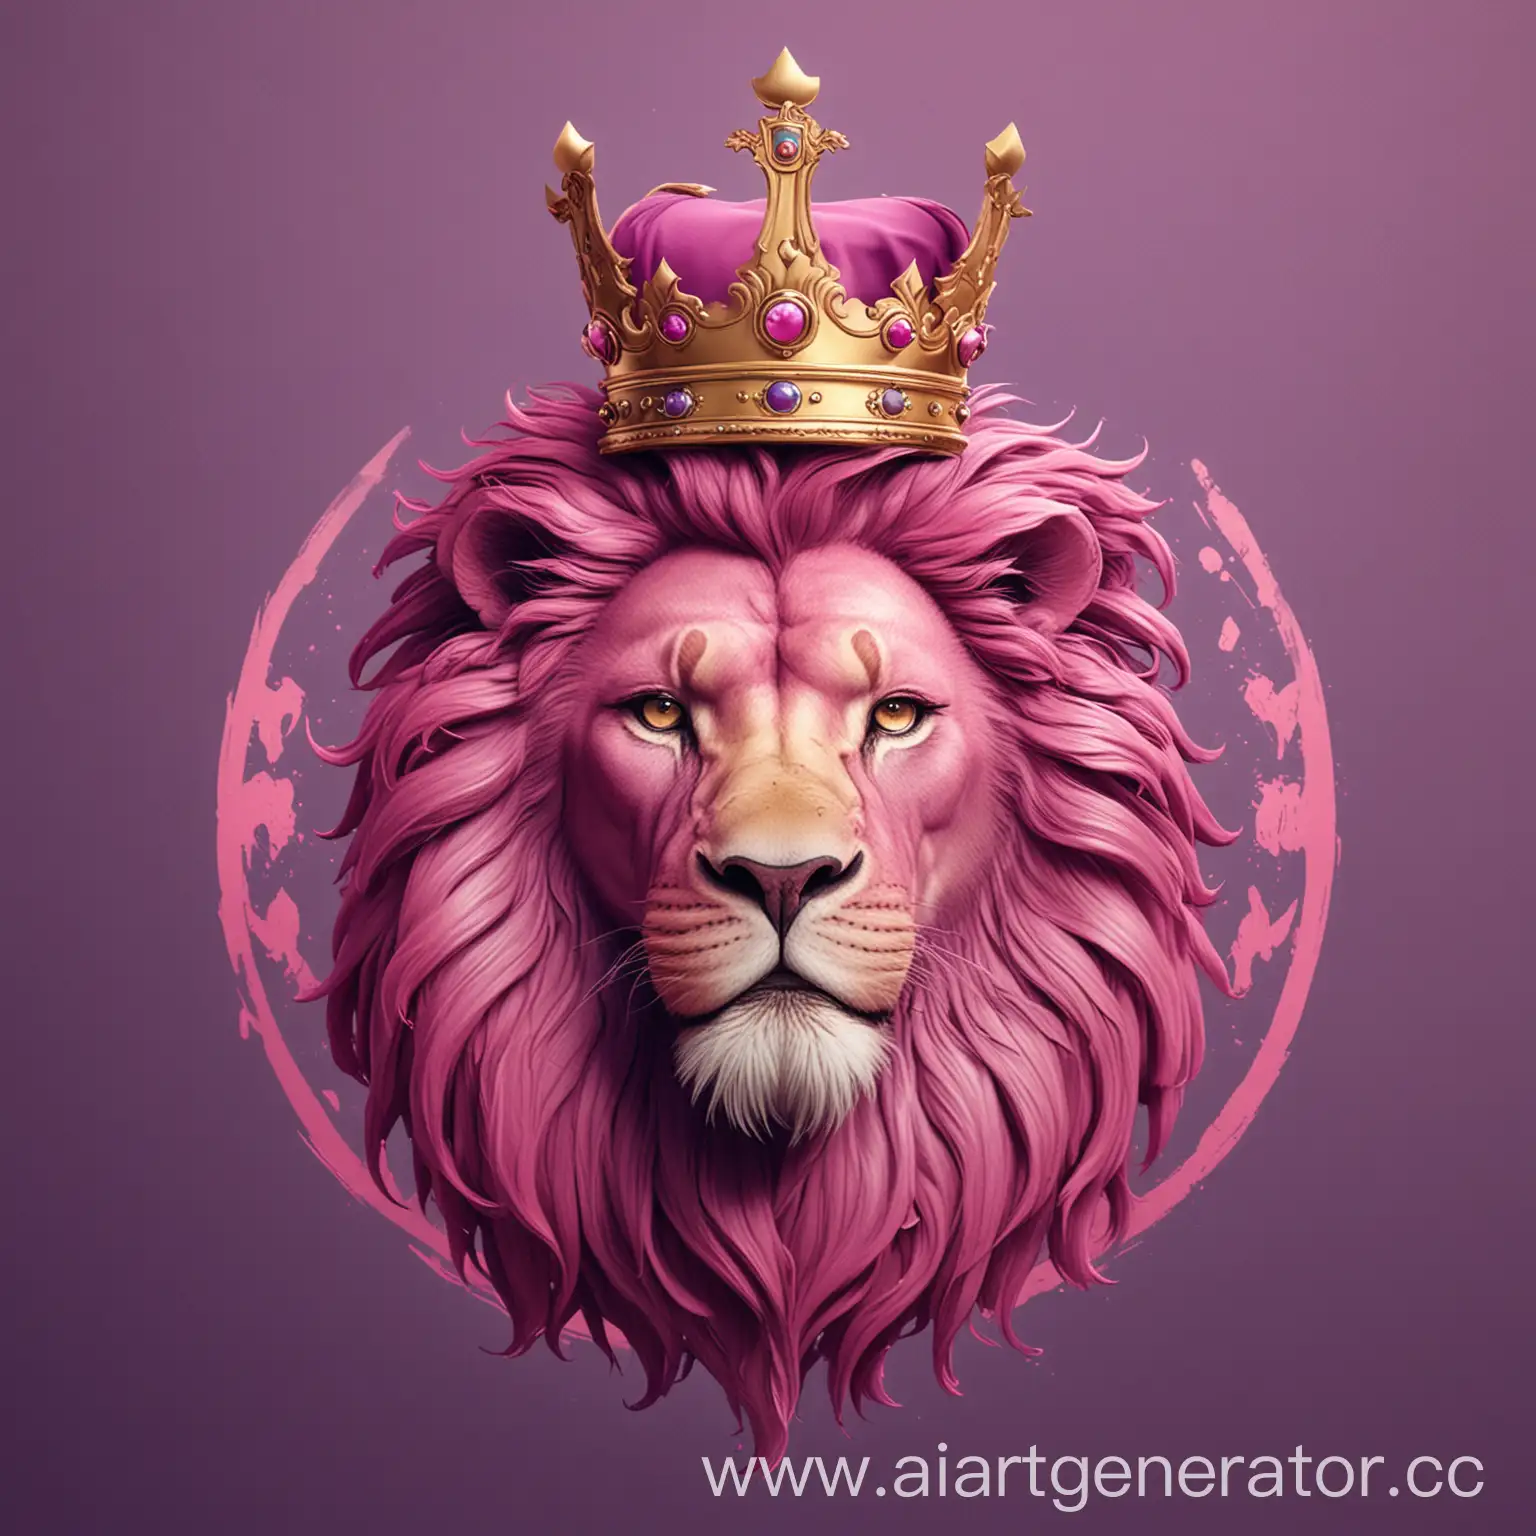 сделай аватарку , где будет изображен лев в короне и надпись "crown all team", она должна быть в фиолетово-розовых тонах